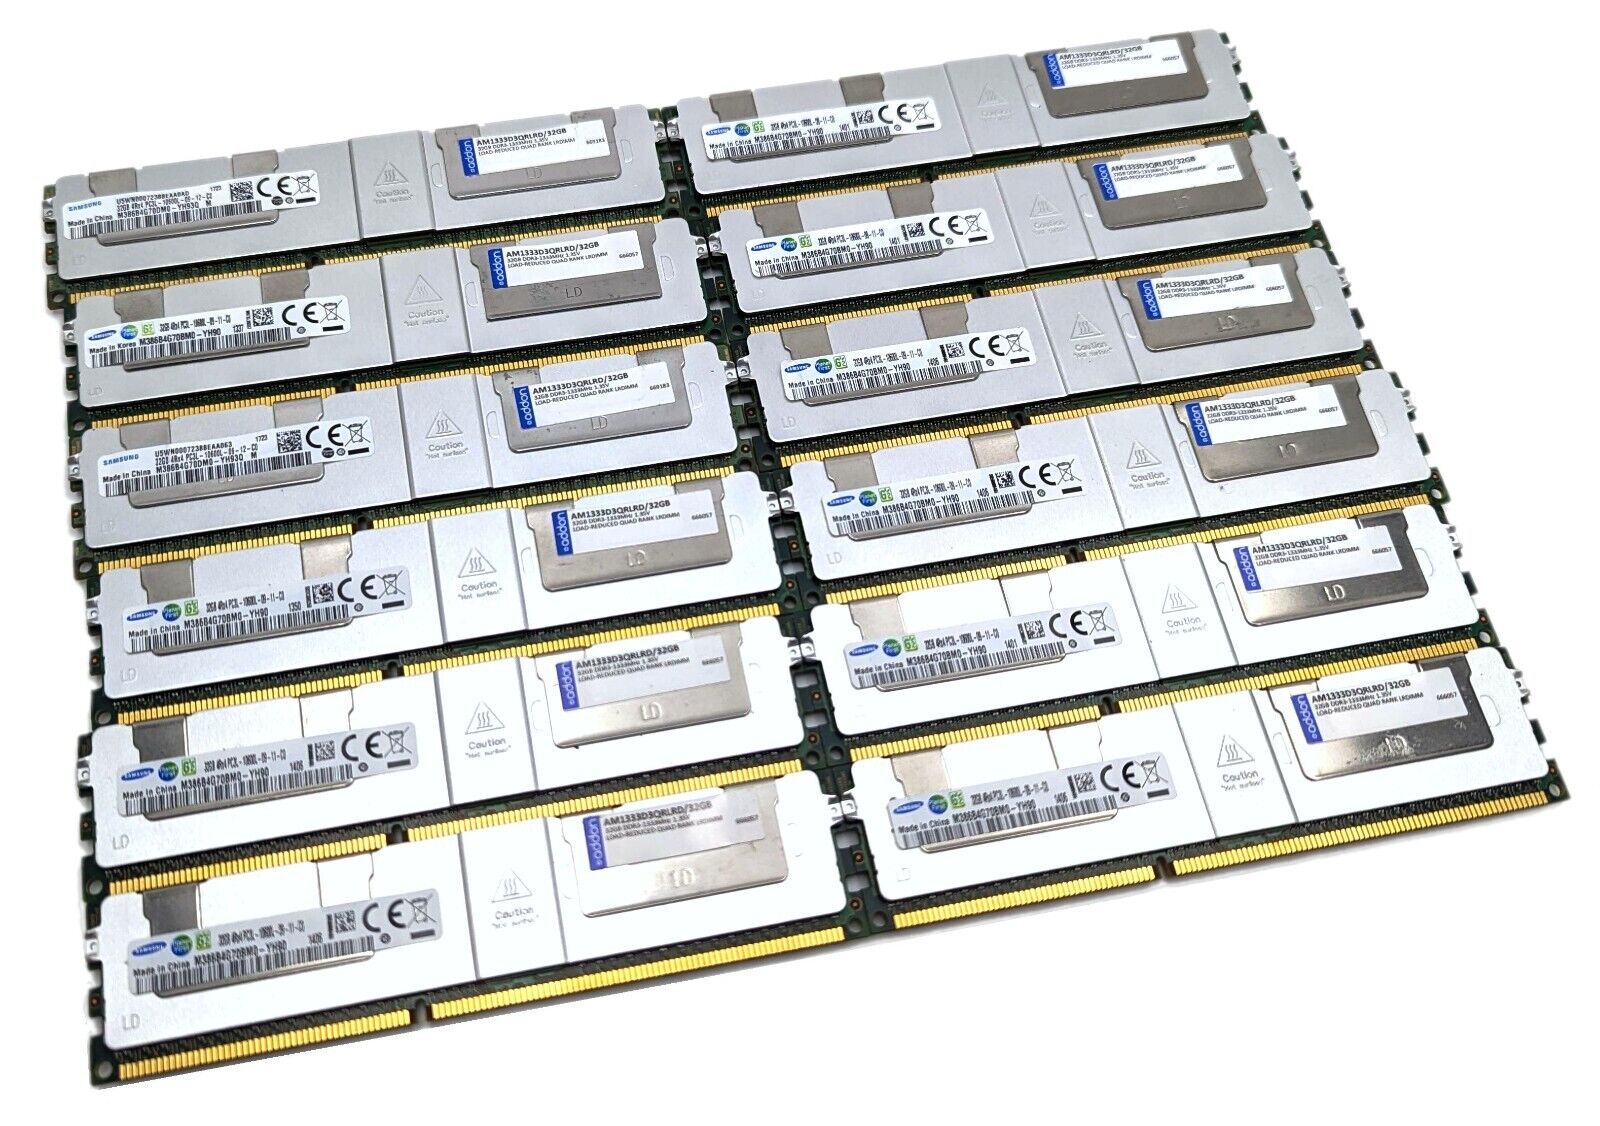 Samsung 384GB Kit (12x 32GB) DDR3L PC3L-10600L ECC Registered Server Memory RAM